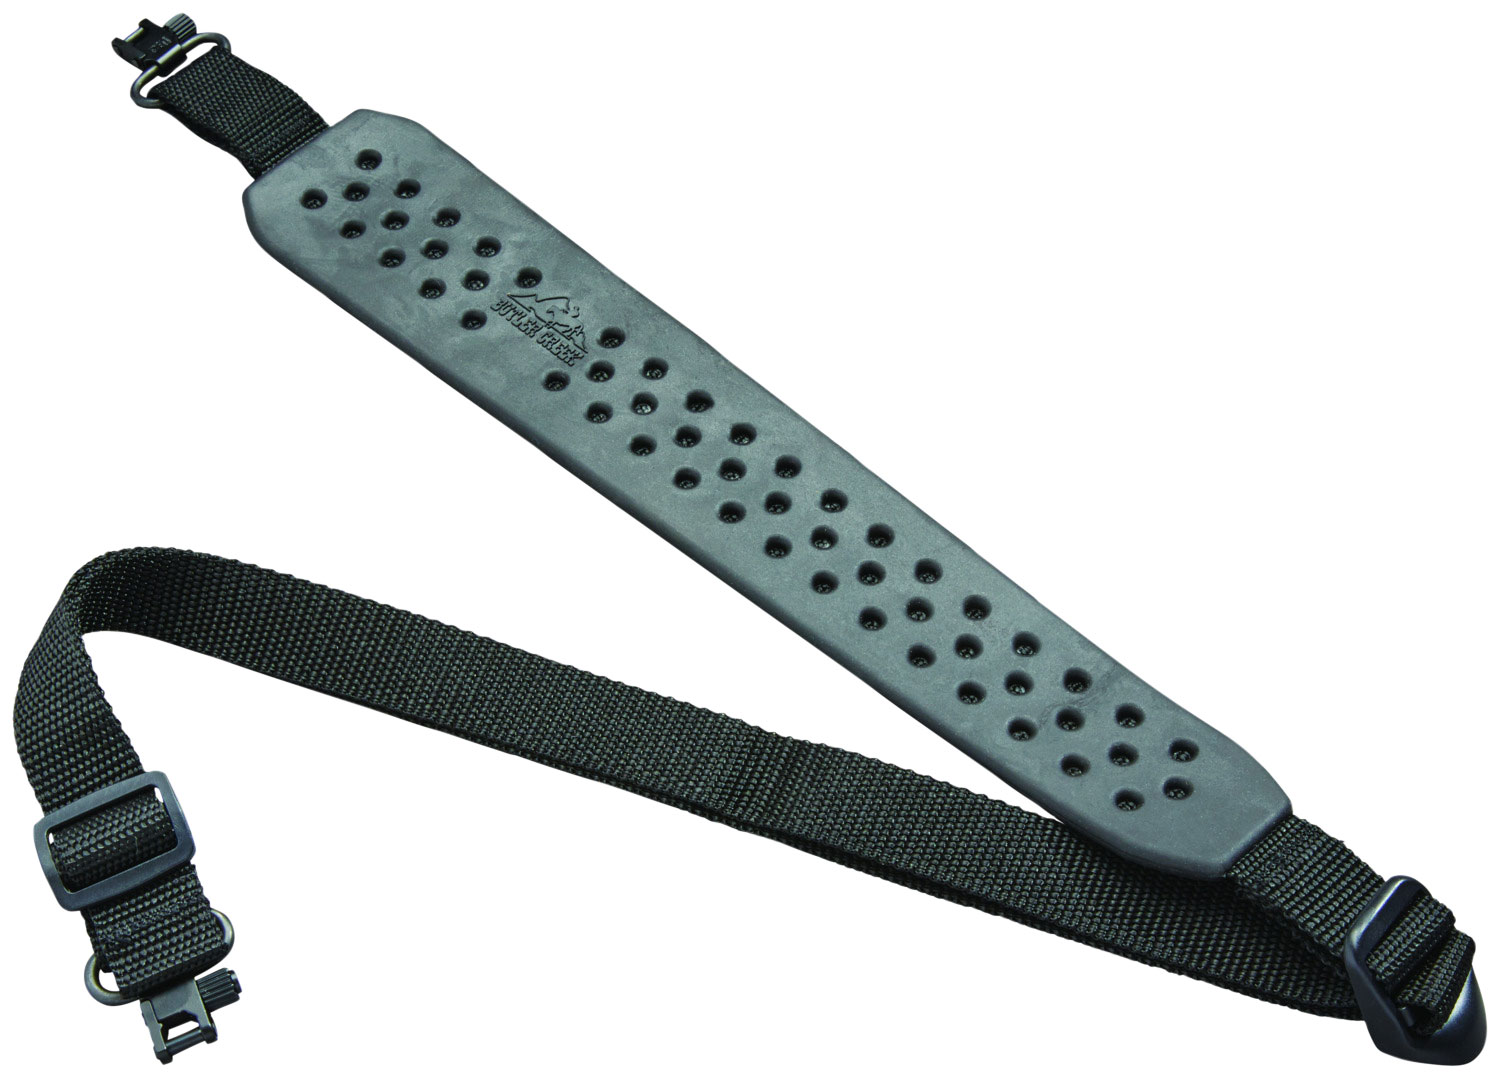 Butler Creek 81060 Comfort V- Grip Sling made of Black Rubber with Nylon Strap, Adjustable Design & 1